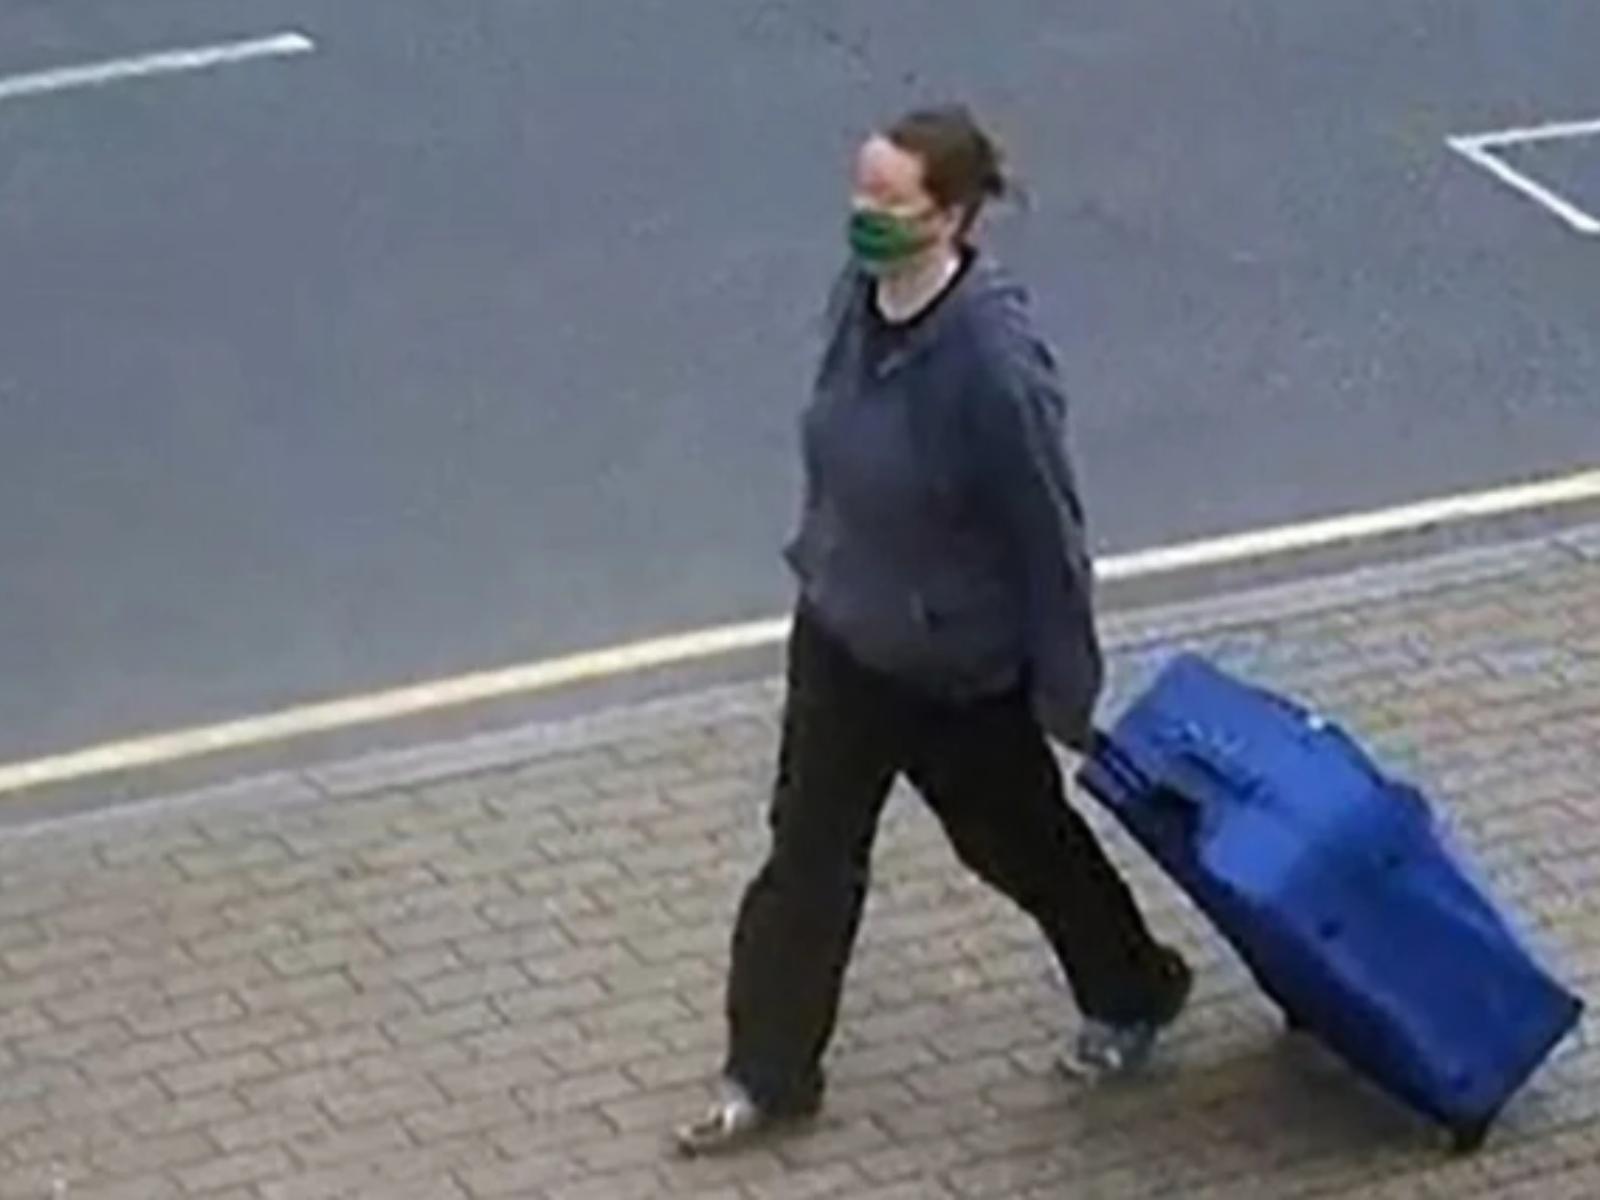 Φρίκη: Γυναίκα αποκεφάλισε τη φίλη της και περιφερόταν στους δρόμους με το πτώμα μέσα στην βαλίτσα